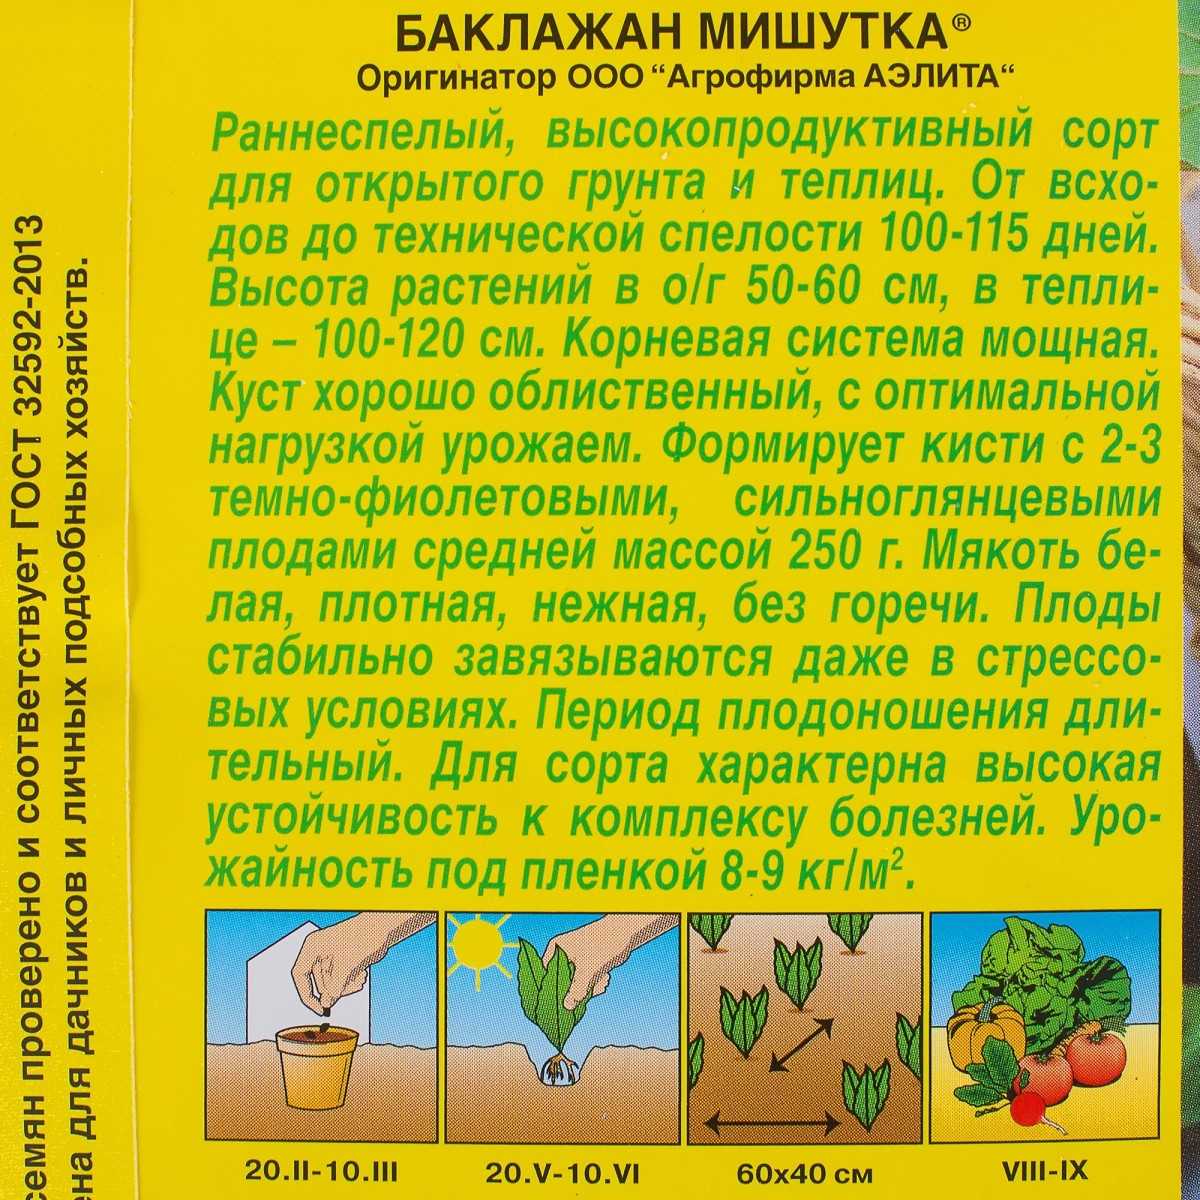 Отзывы о сортах баклажанов: выращиваю их в открытом грунте